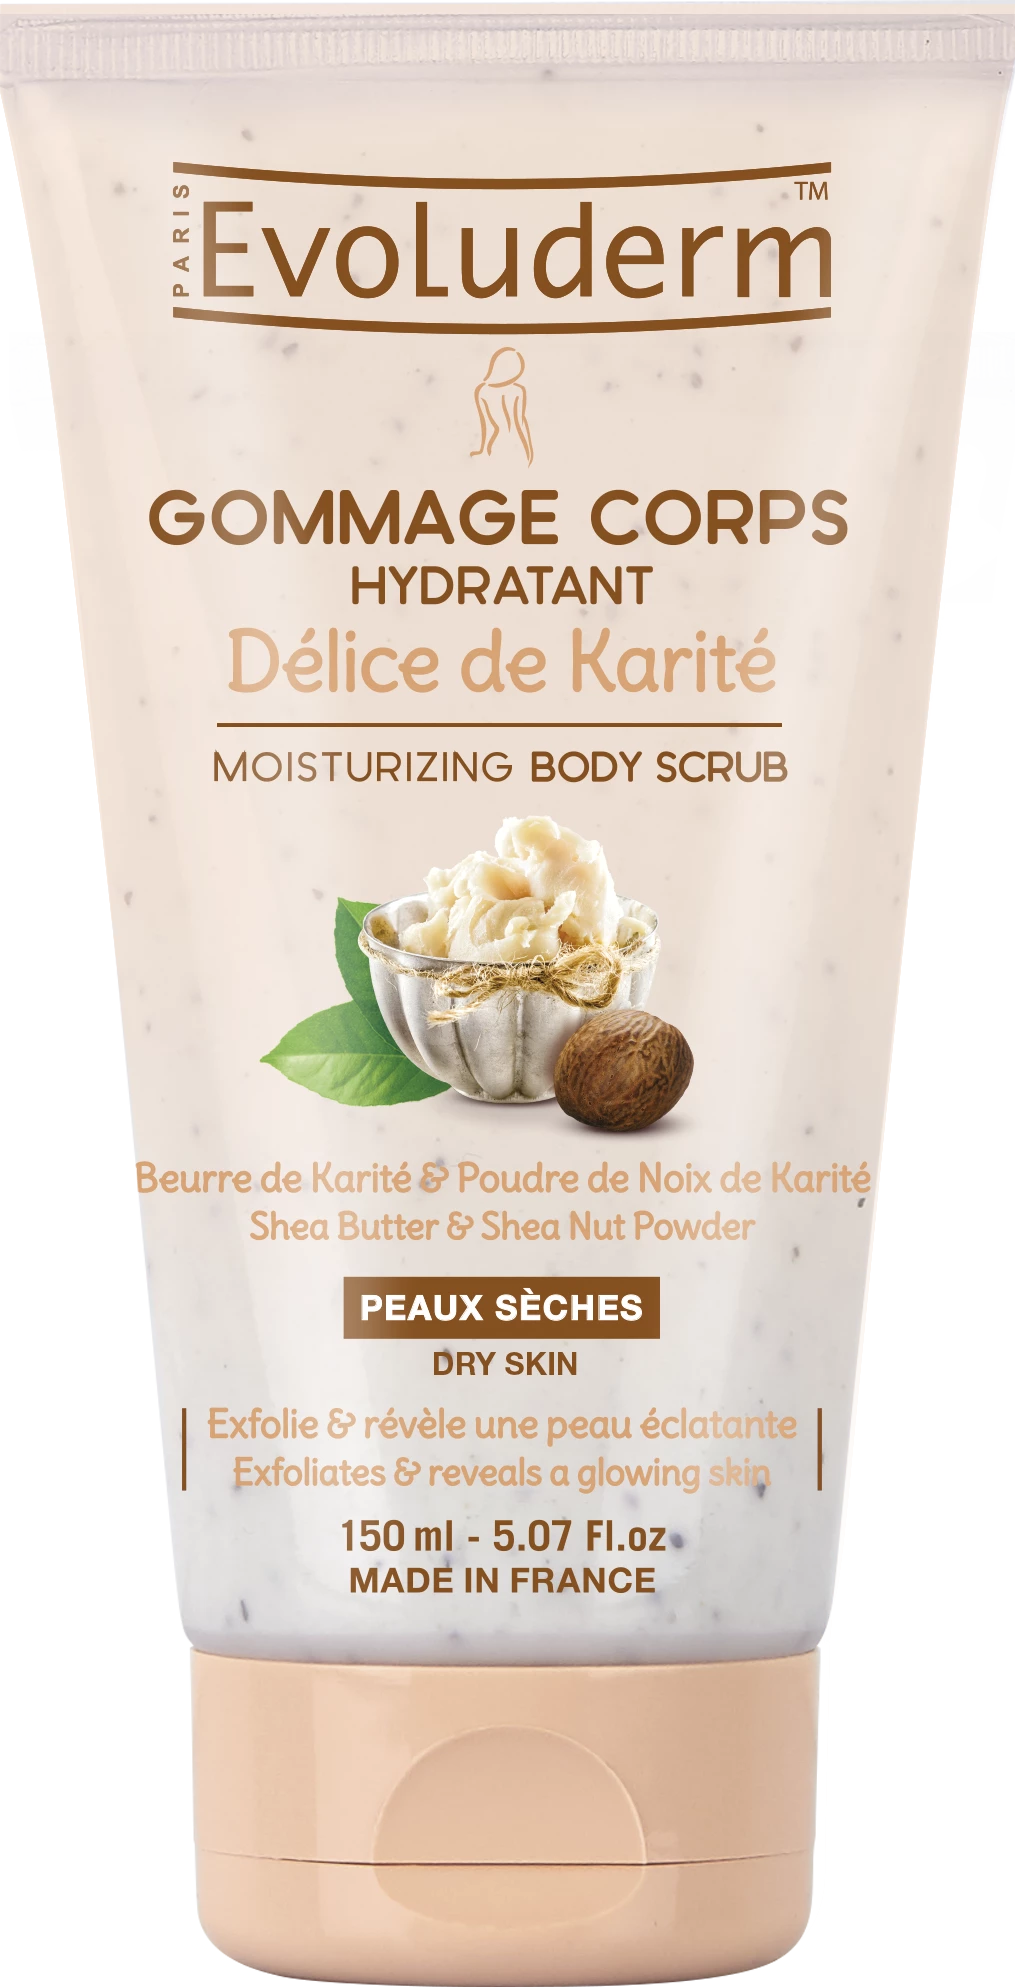 Délice de Karité Gommage Corps Hydratant, 150ml - EVOLUDERM